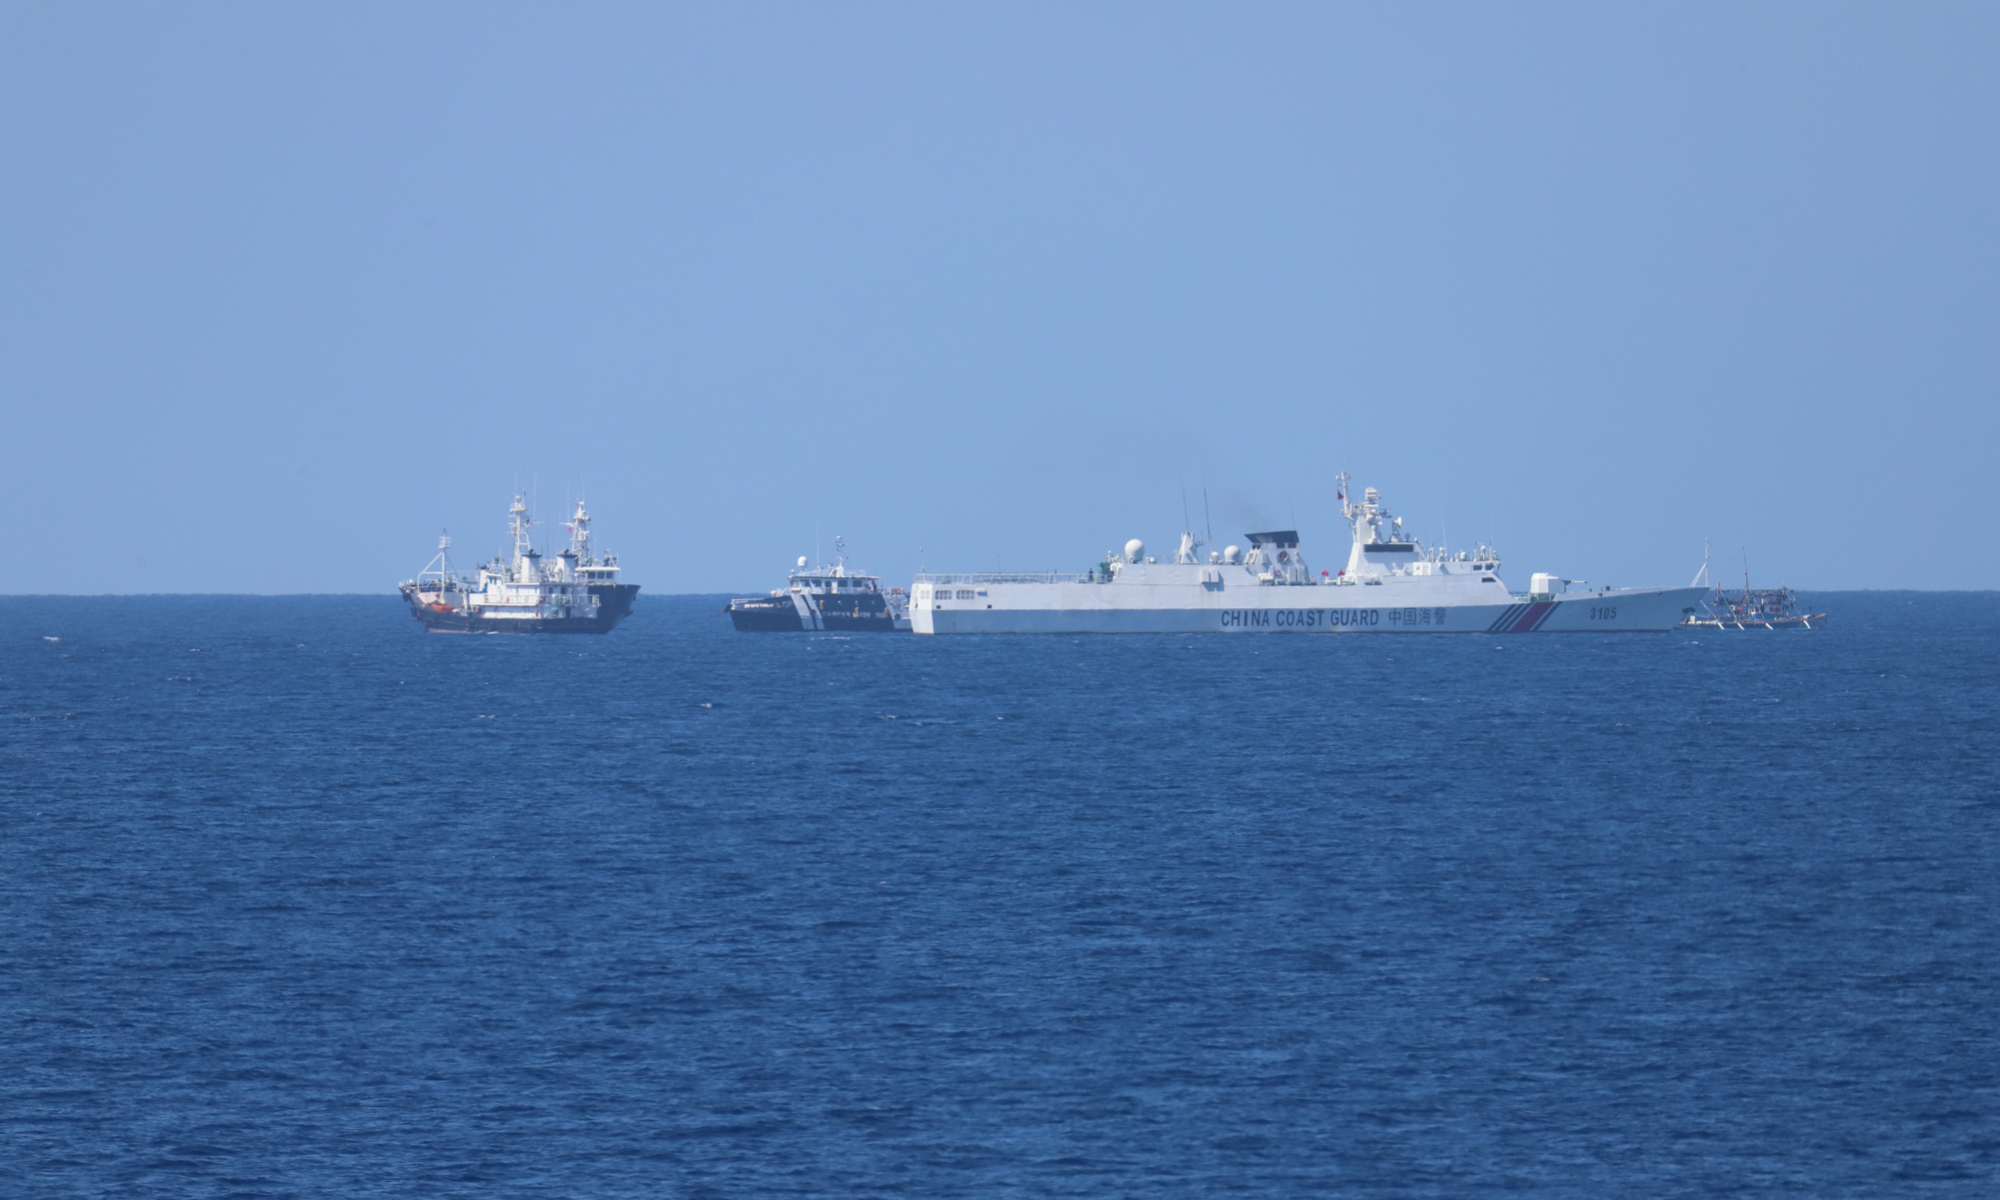 बारम्बारको चेतावनीका बाबजुद दक्षिण चीन सागरको ह्वाङयान टापूमा अवैध रूपमा घुसपैठ गर्ने फिलिपिनी जहाज लखेटिएको चीनको दाबी